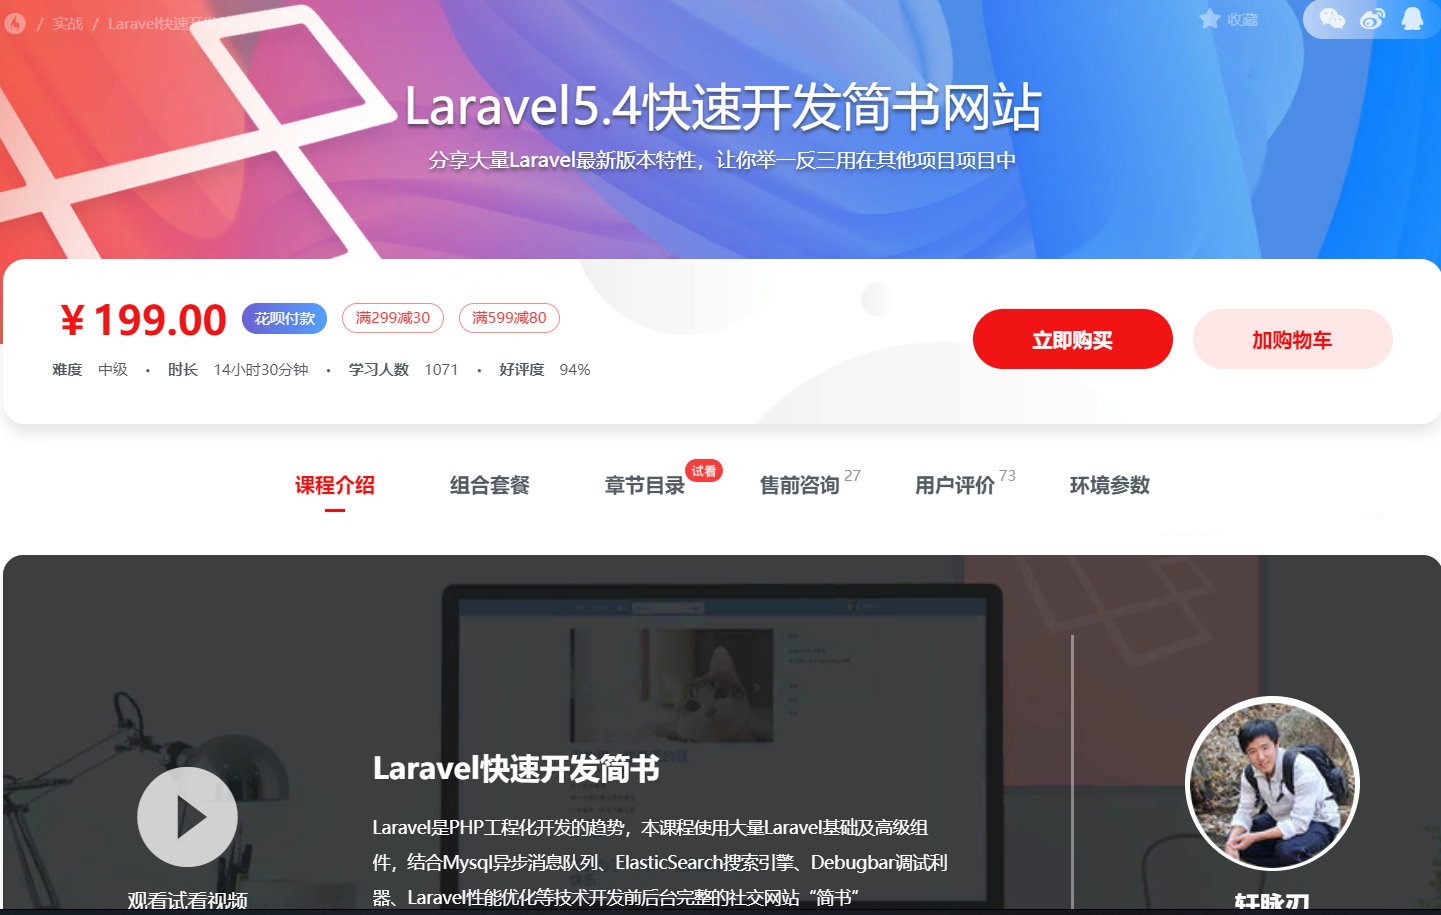 php框架Laravel5.4快速开发简书项目教程